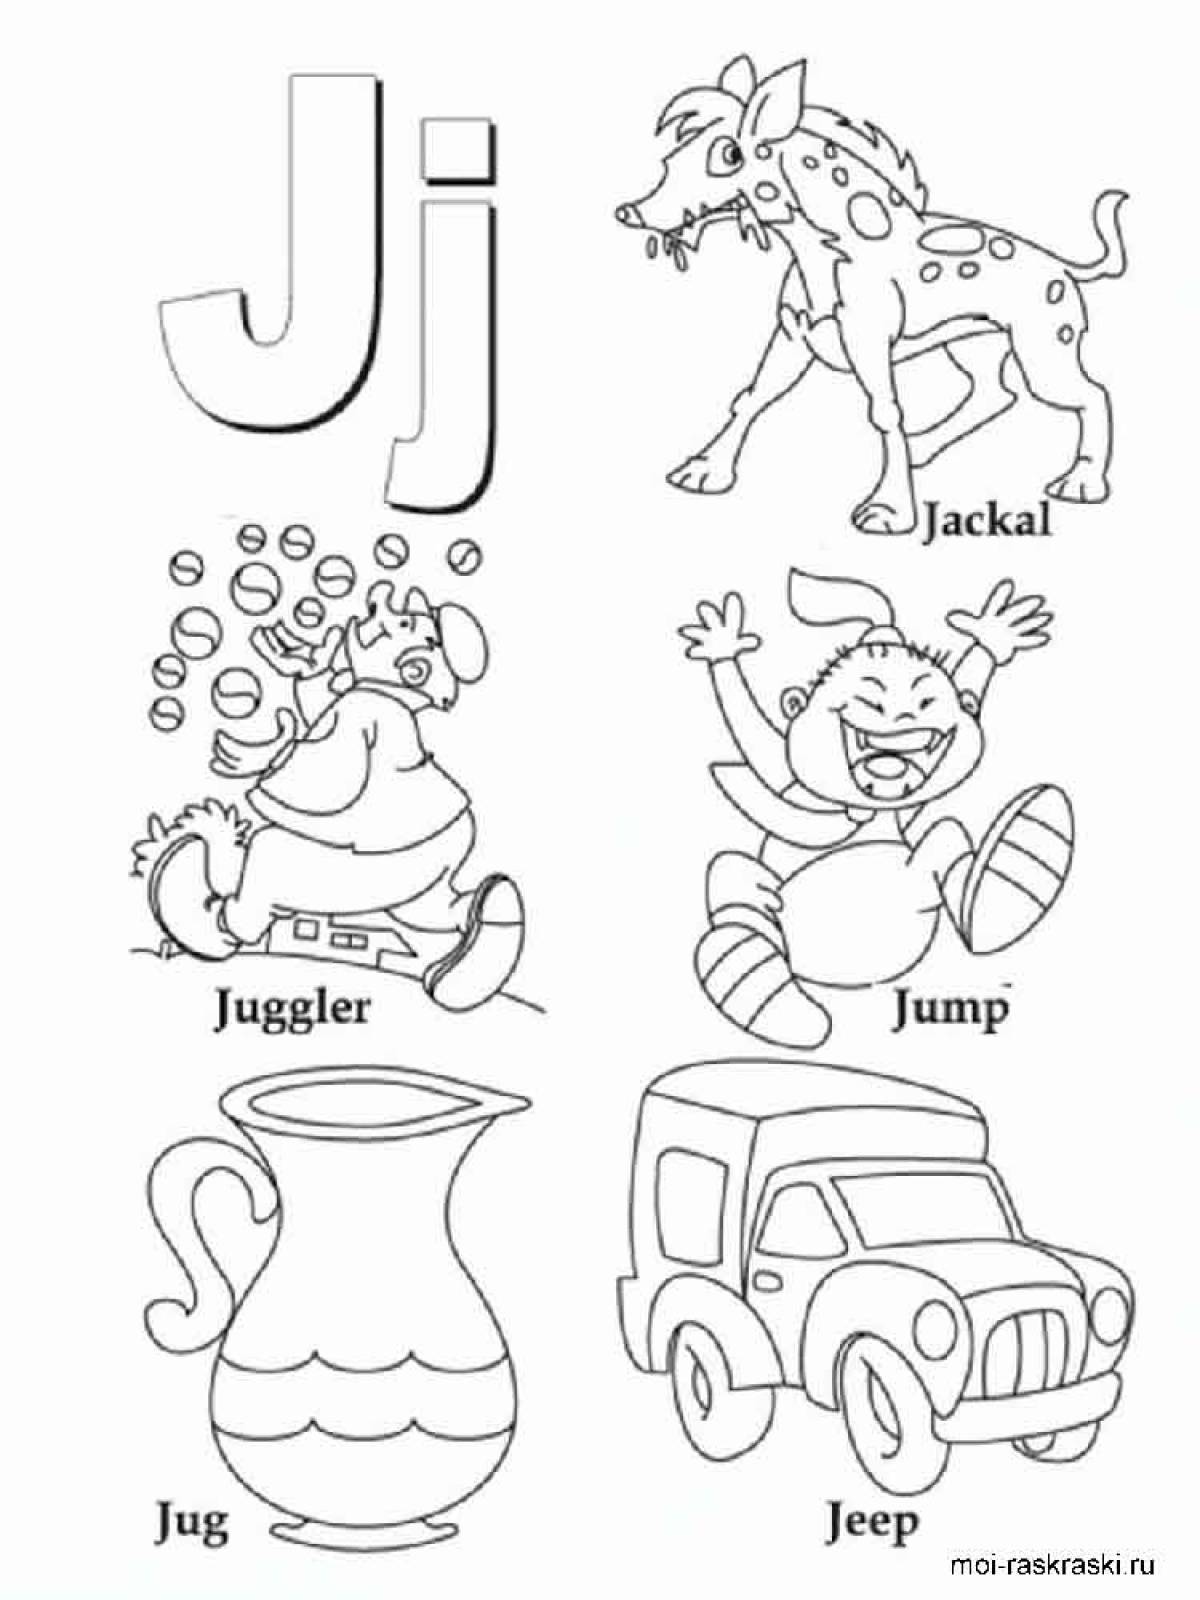 Раскраска английский алфавит для детей 5-6 лет